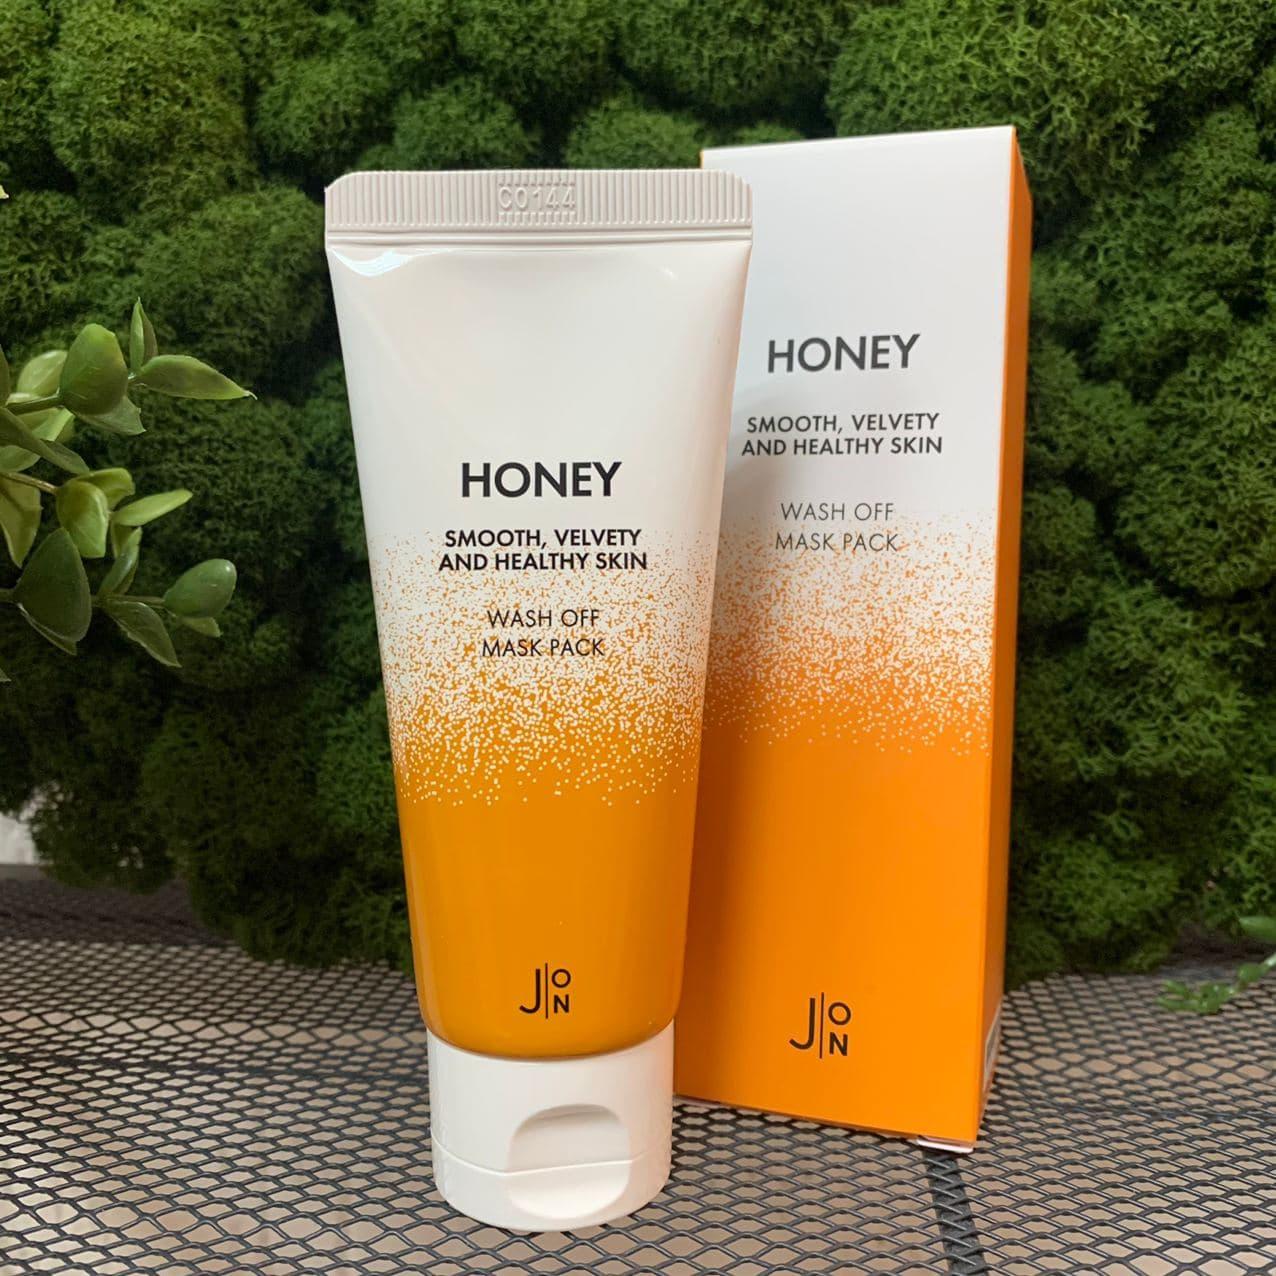 Смываемая маска с мёдом J:ON Honey Smooth Velvety and Healthy Skin Wash Off Mask Pack, 50мл